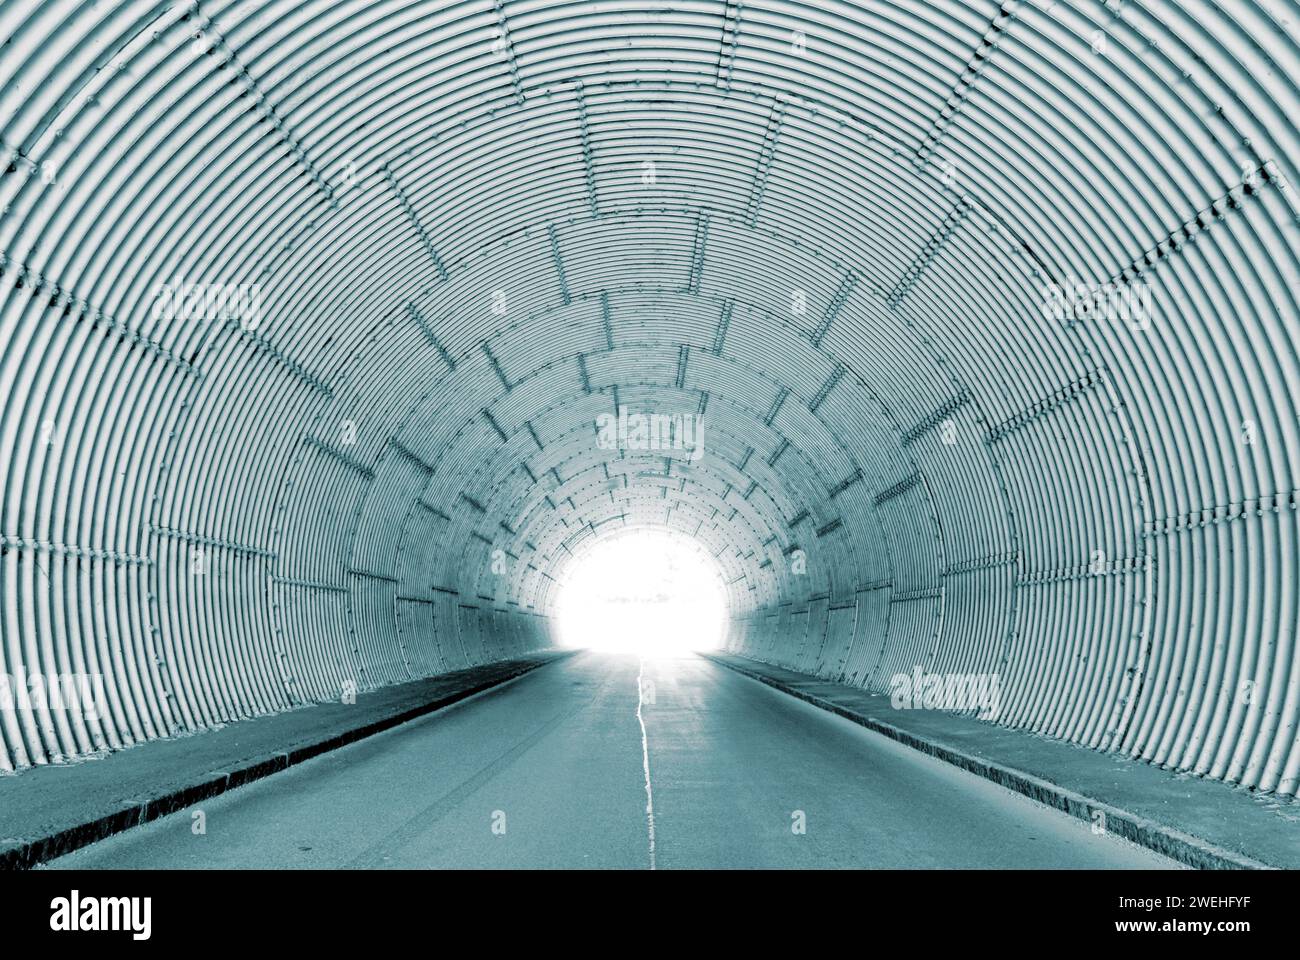 Innenansicht eines Tunnels mit hellem Tunnelausgang, Licht am Ende des Tunnels Stockfoto